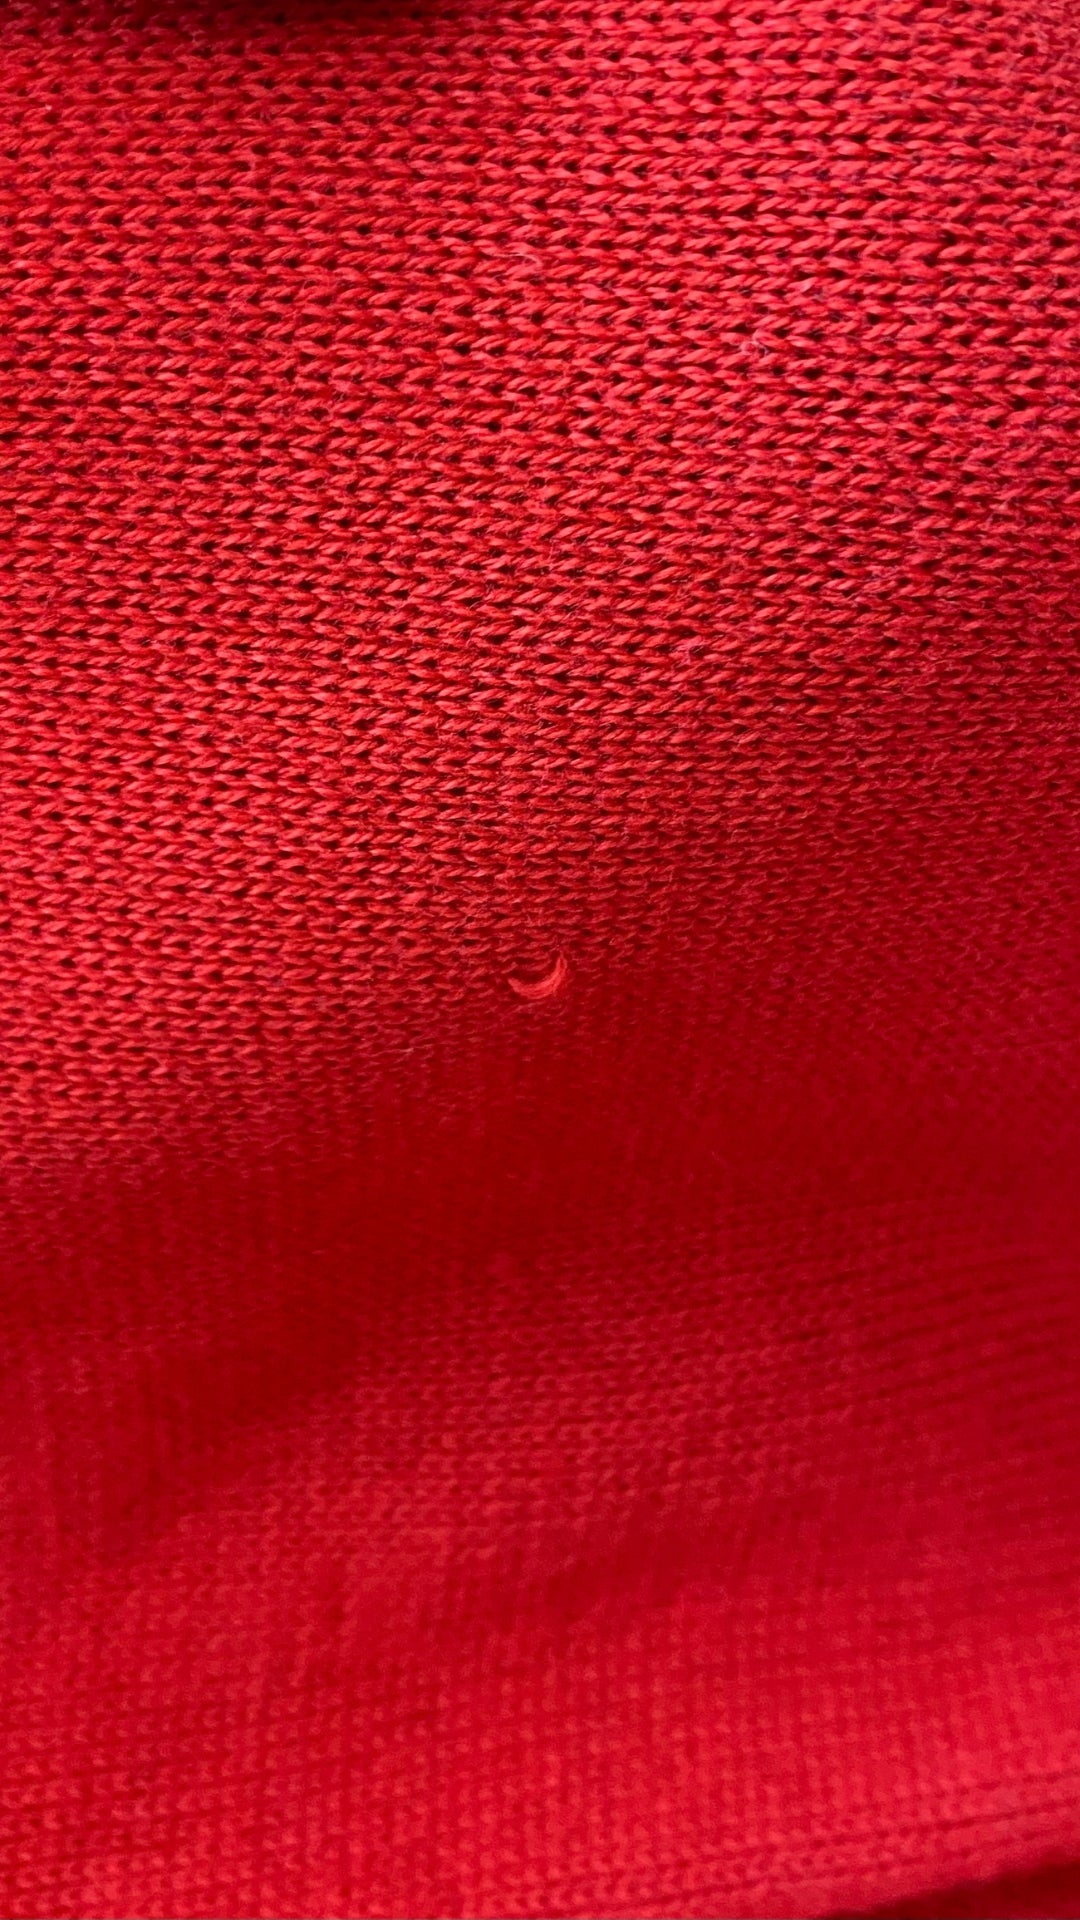 Chandail en tricot rouge col bateau Lauren Ralph Lauren, taille small. Vue du mini fil tiré derrière la manche droite.